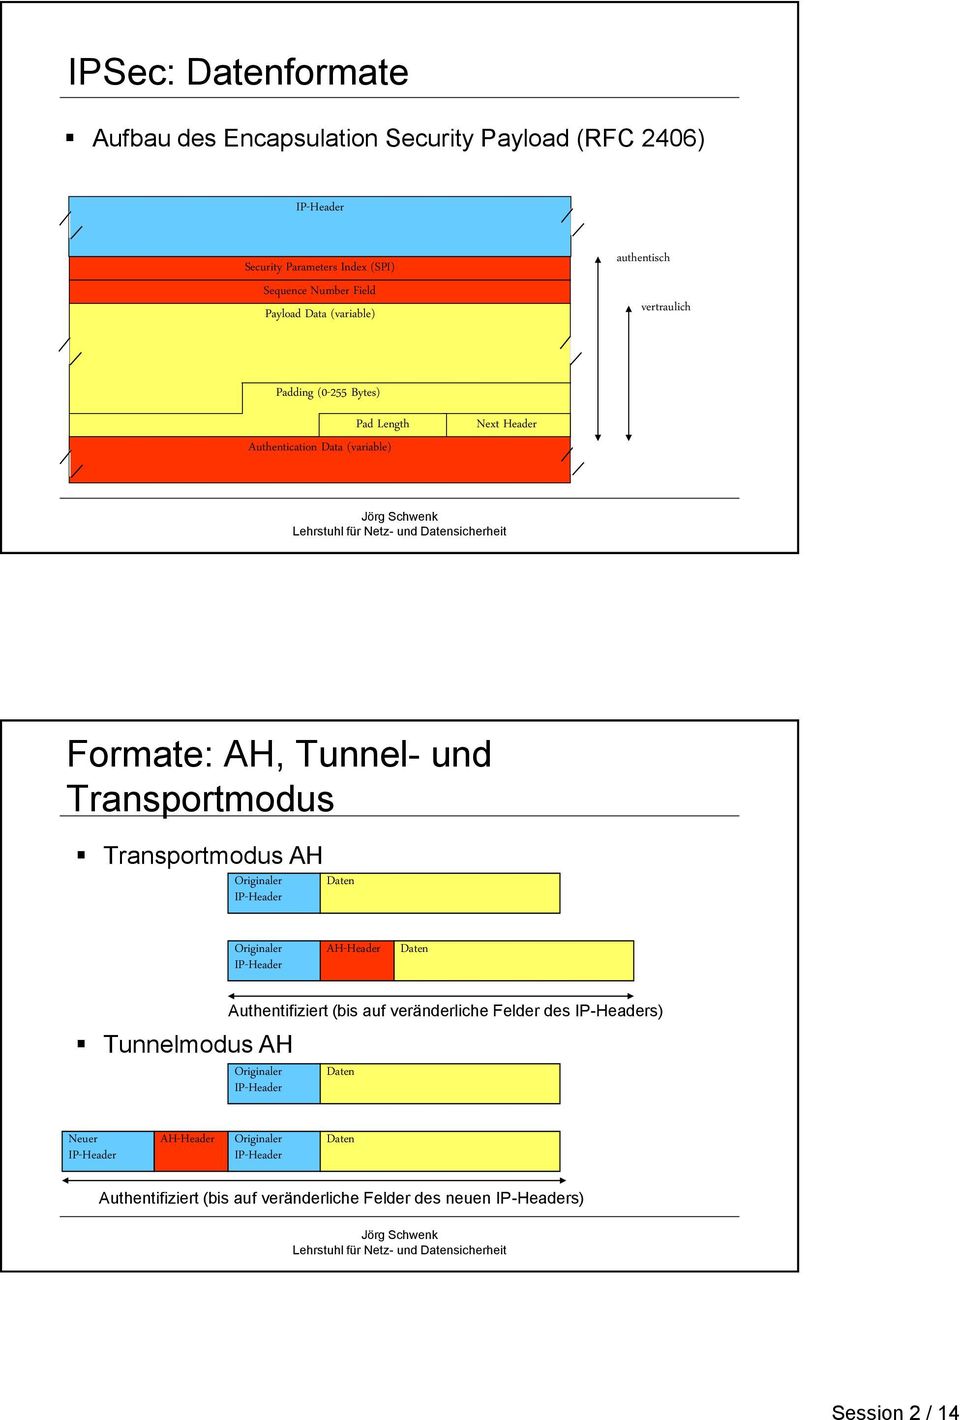 Transportmodus AH Originaler IP-Header Daten Originaler IP-Header AH-Header Daten Tunnelmodus AH Authentifiziert (bis auf veränderliche Felder des